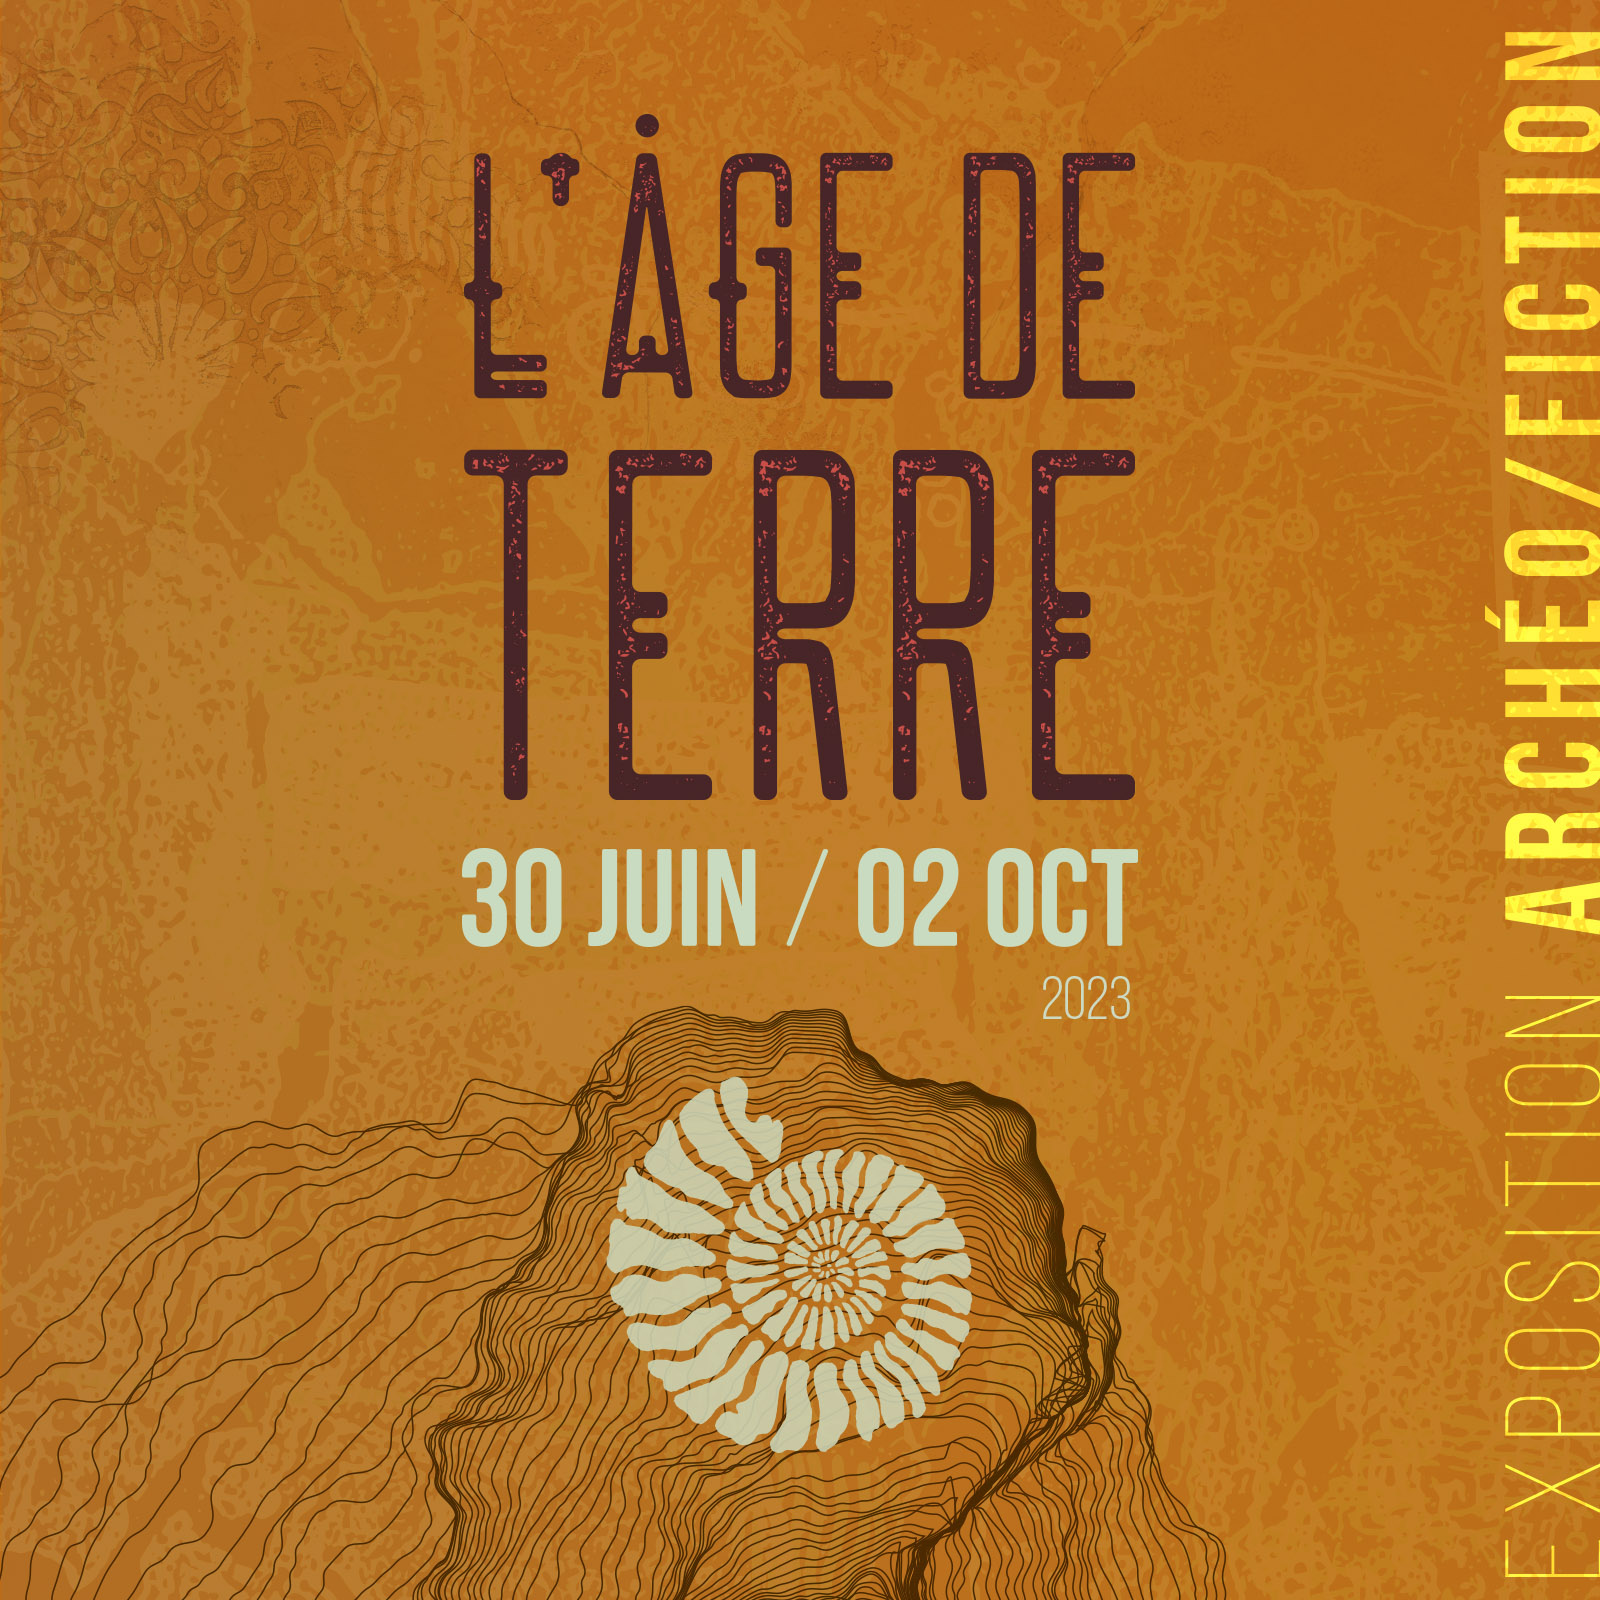 Affiche de l'exposition "Âge de terre" au Mudaac d'Épinal.